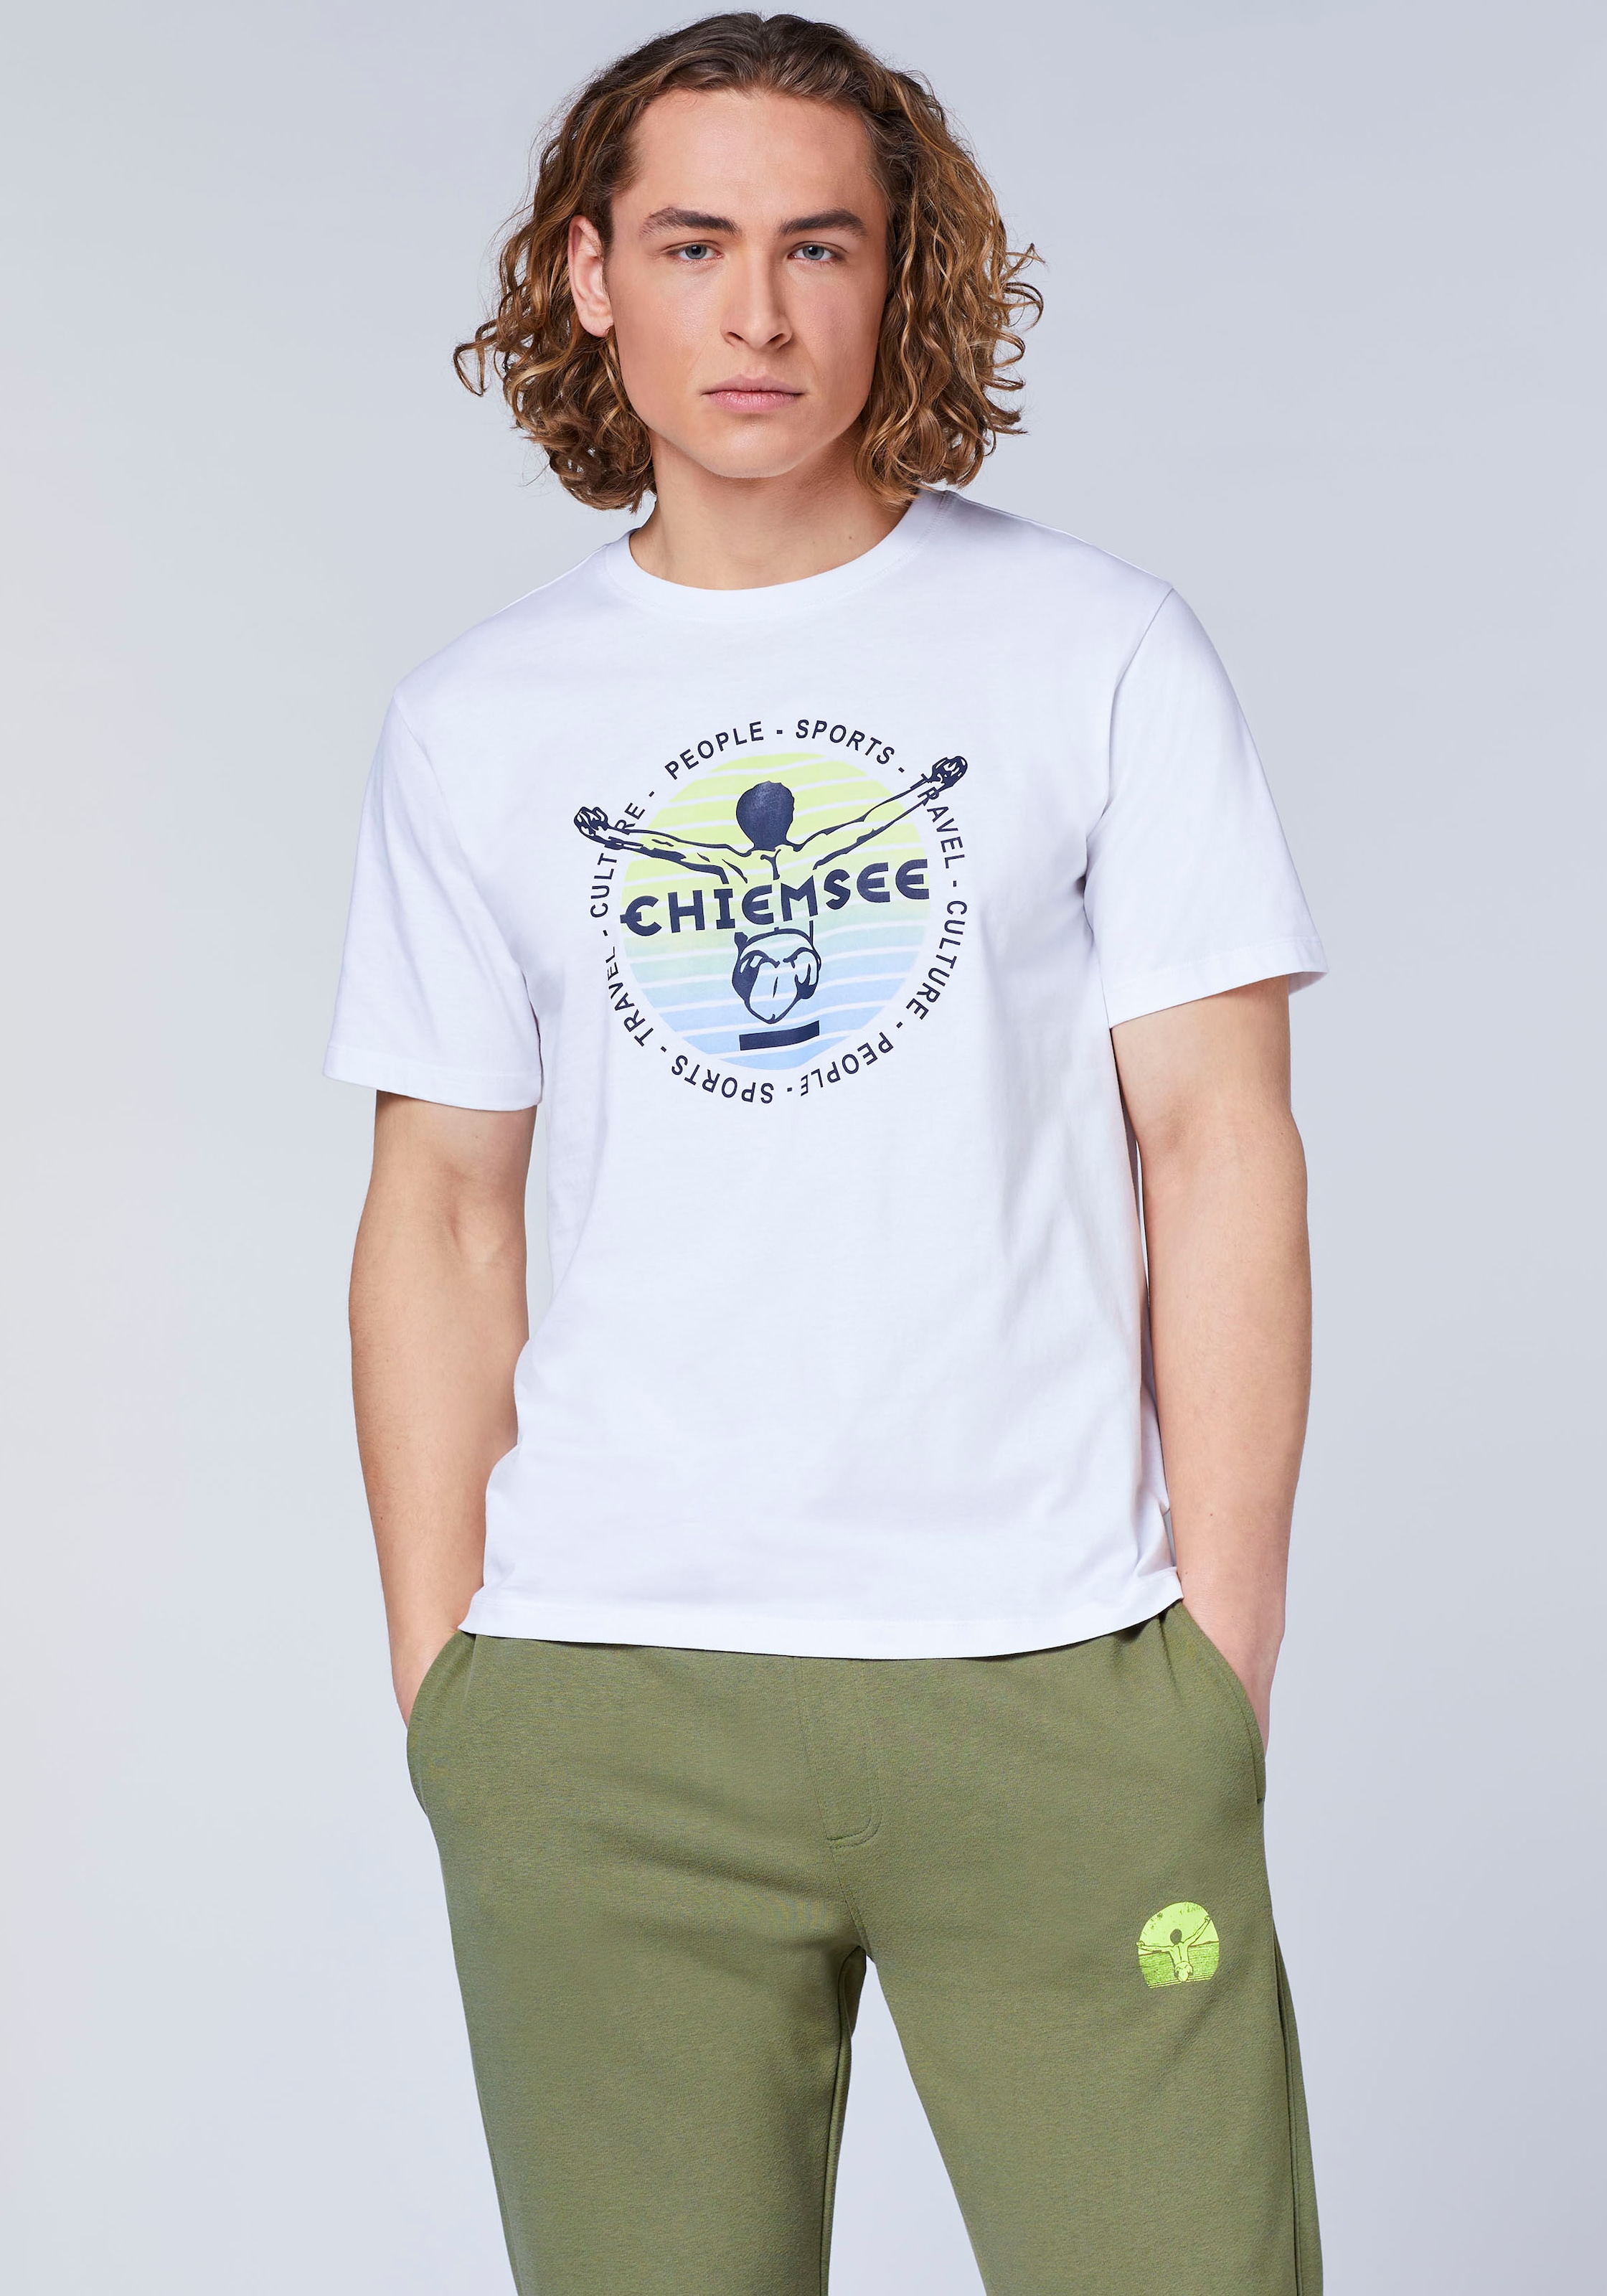 Chiemsee Marke online kaufen bei Ackermann | T-Shirts